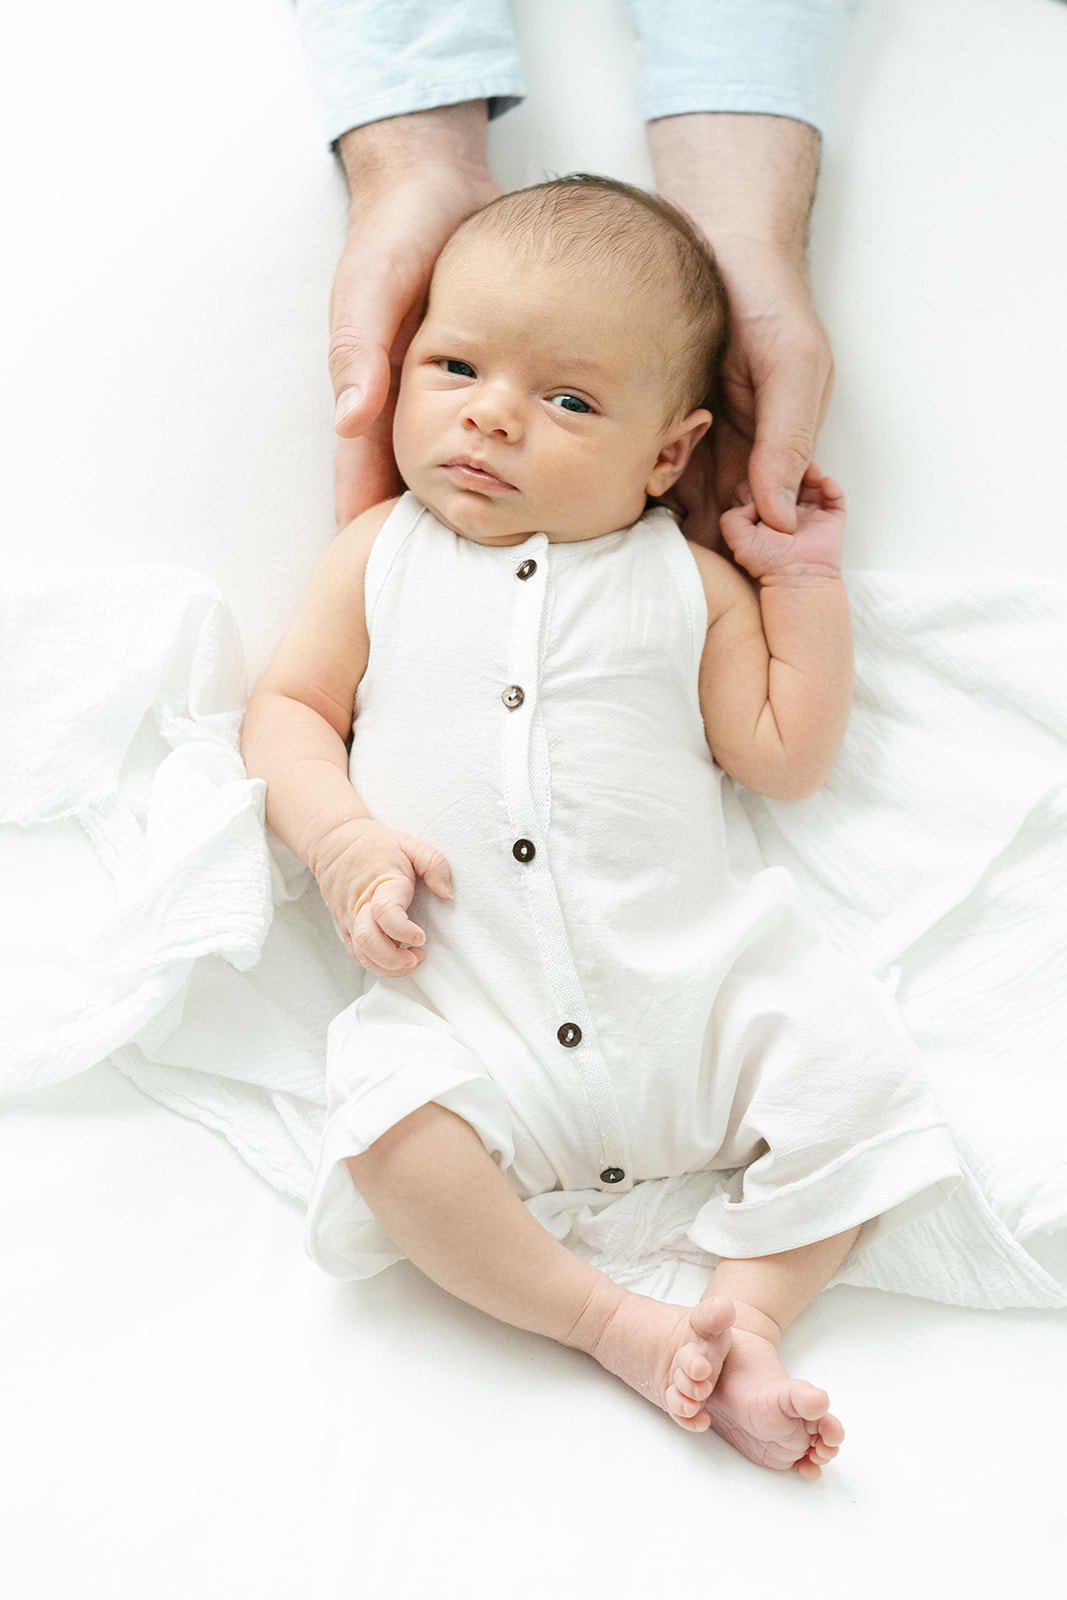 asheville-newborn-dads-hands-on-baby